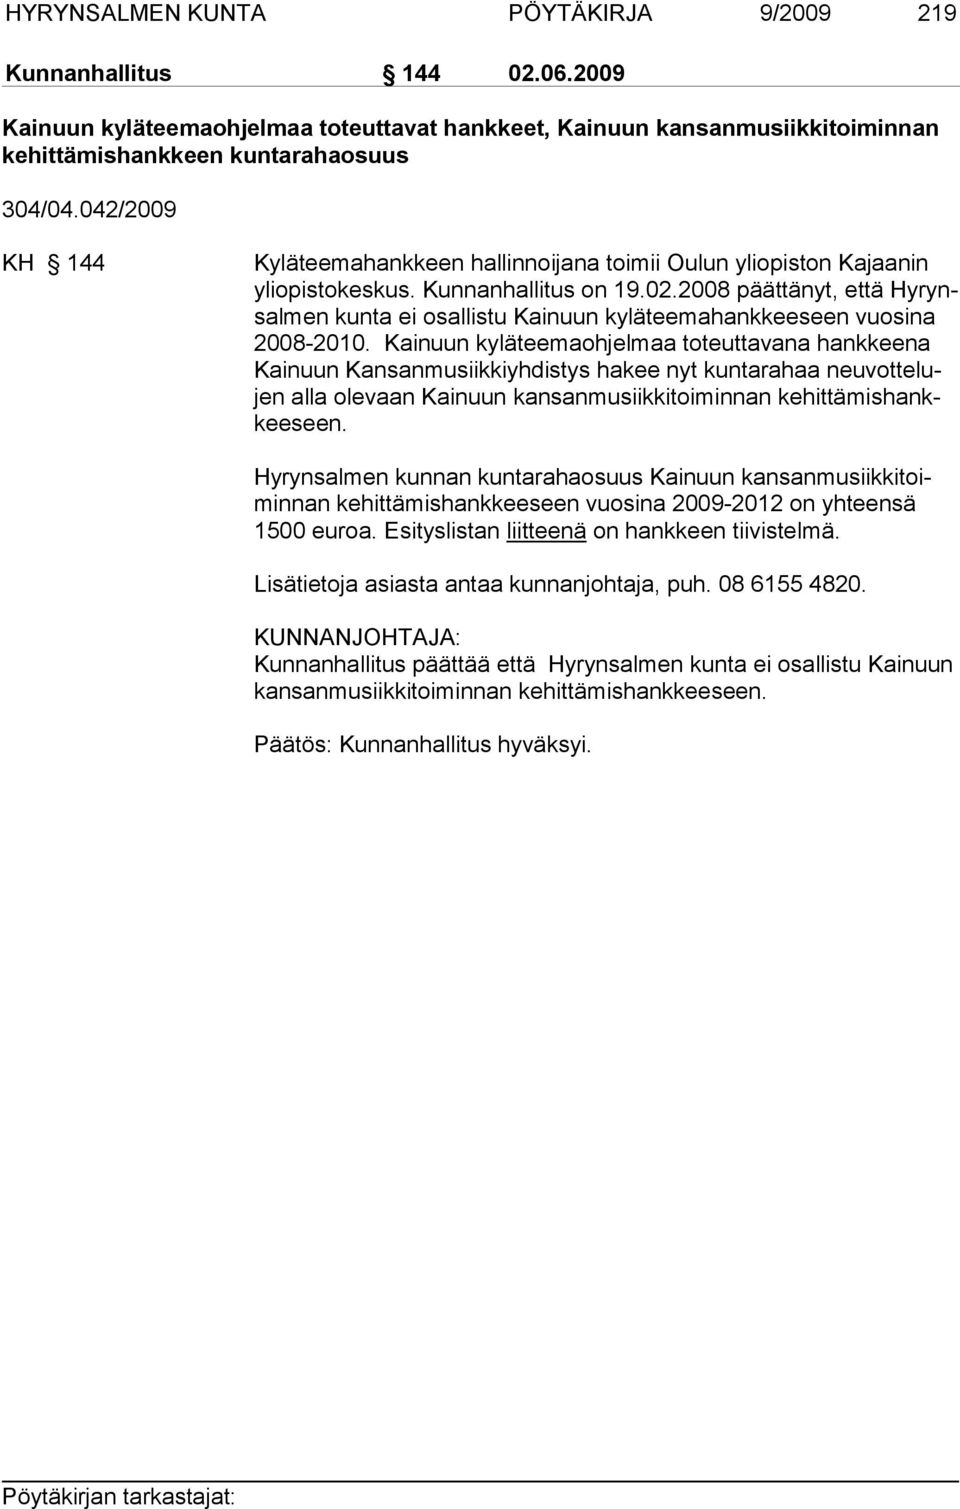 2008 päättänyt, että Hy rynsalmen kunta ei osallistu Kainuun kyläteemahankkeeseen vuosi na 2008-2010.